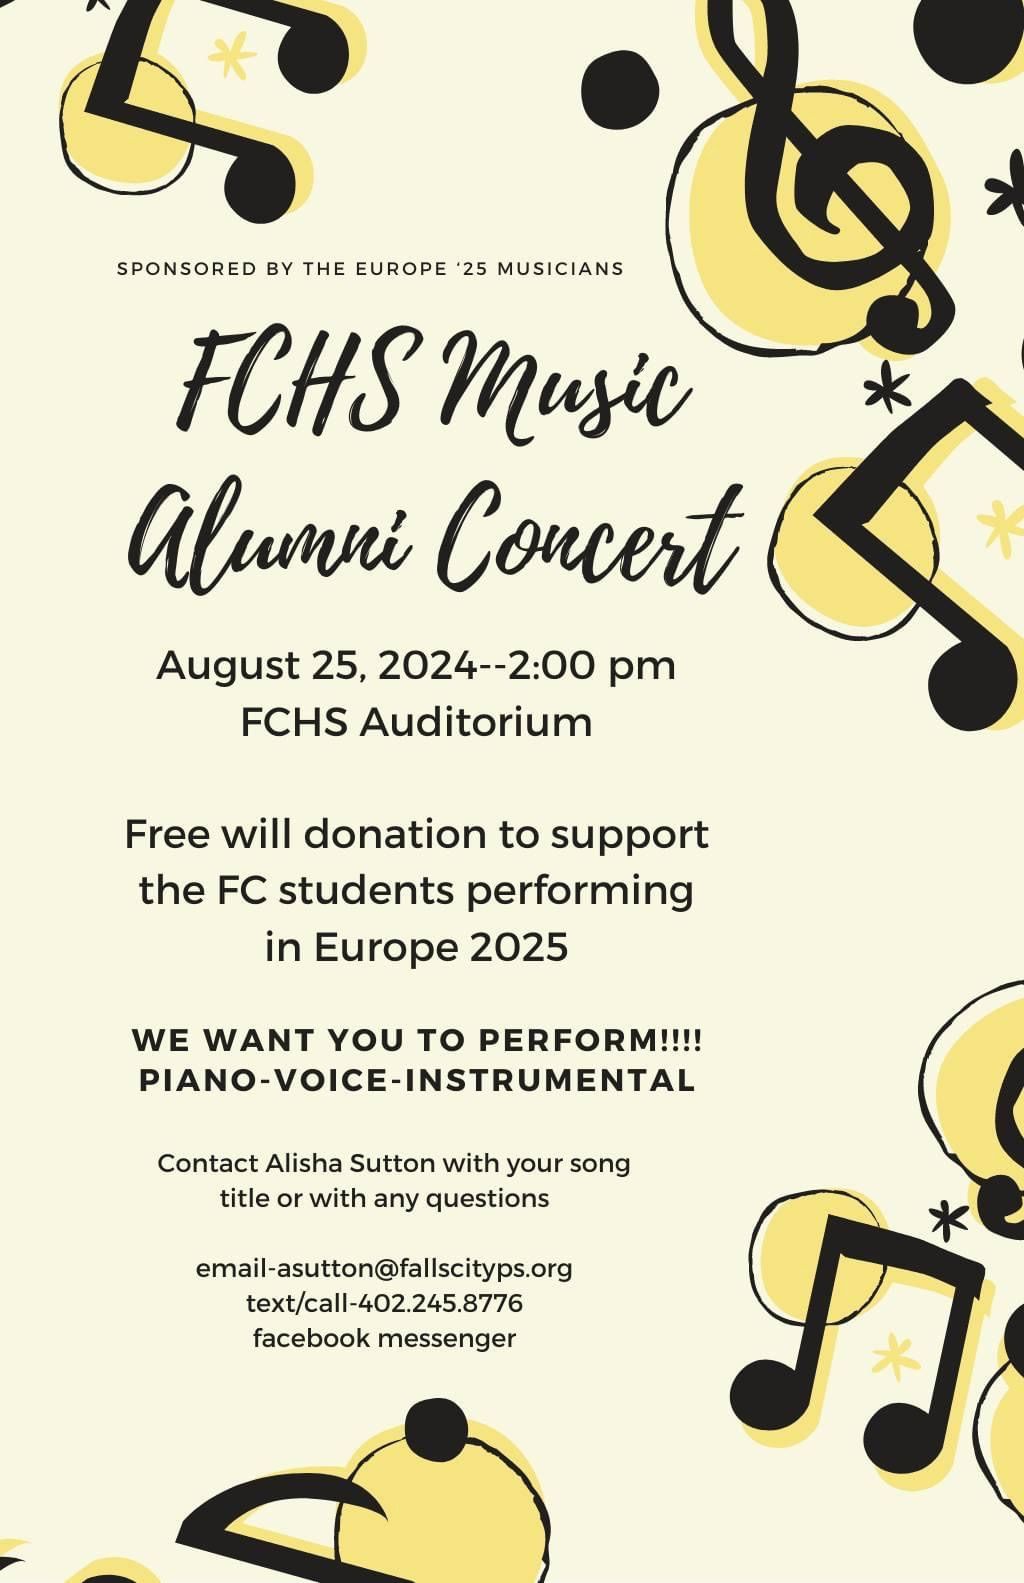 FCHS Music Alumni Concert